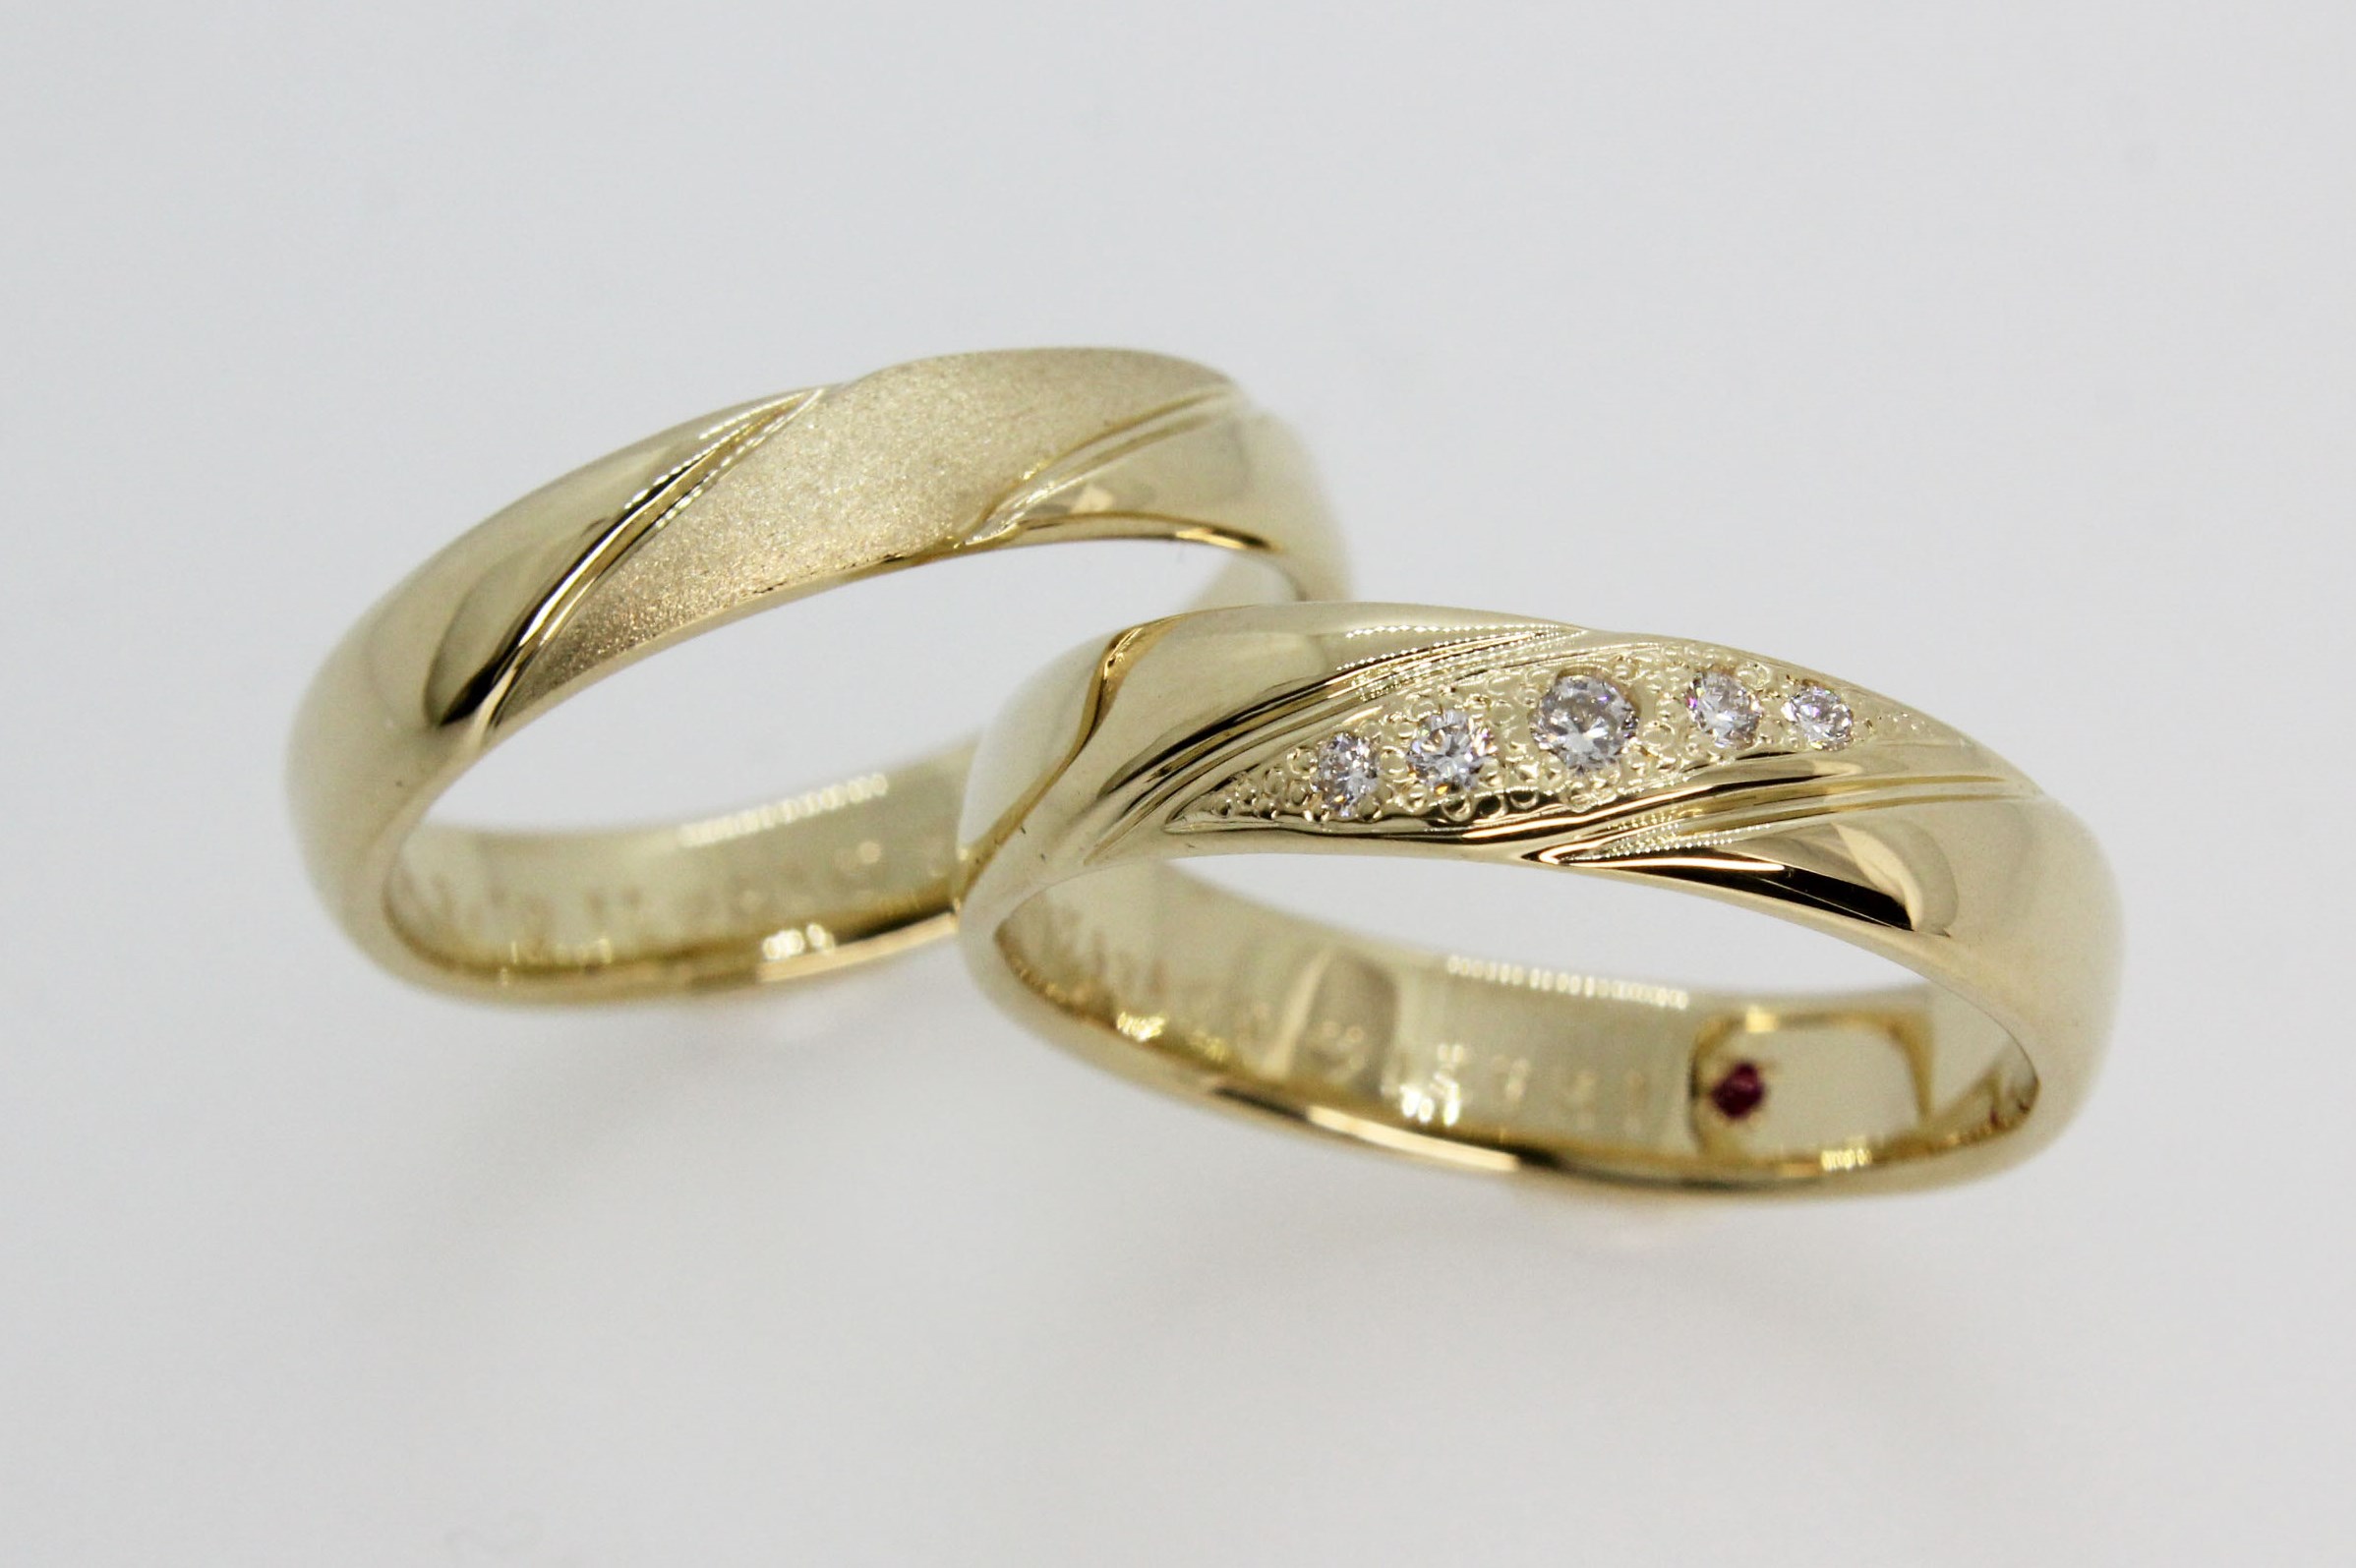 滋賀県彦根市よりお越しの先輩カップル 手作り結婚指輪 Fef 結婚指輪 婚約指輪の手作りの店 エフイーエフ 京都 滋賀